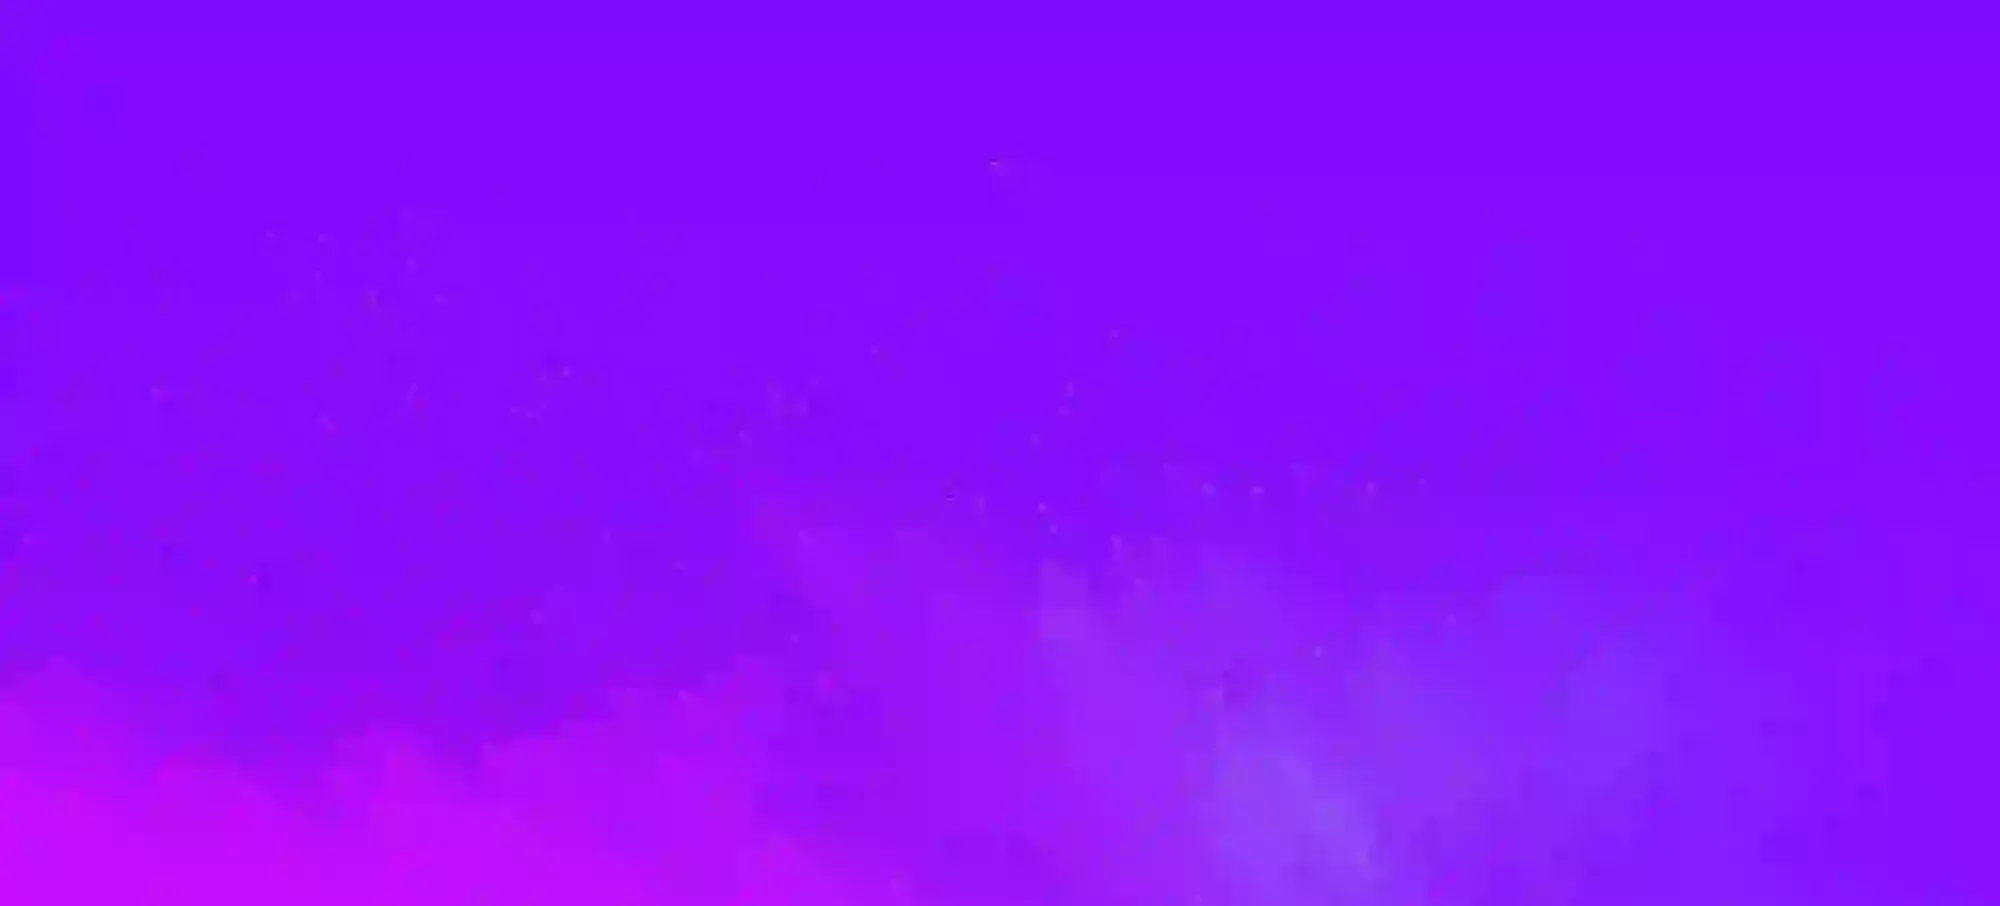 pink splatters against a purple backdrop